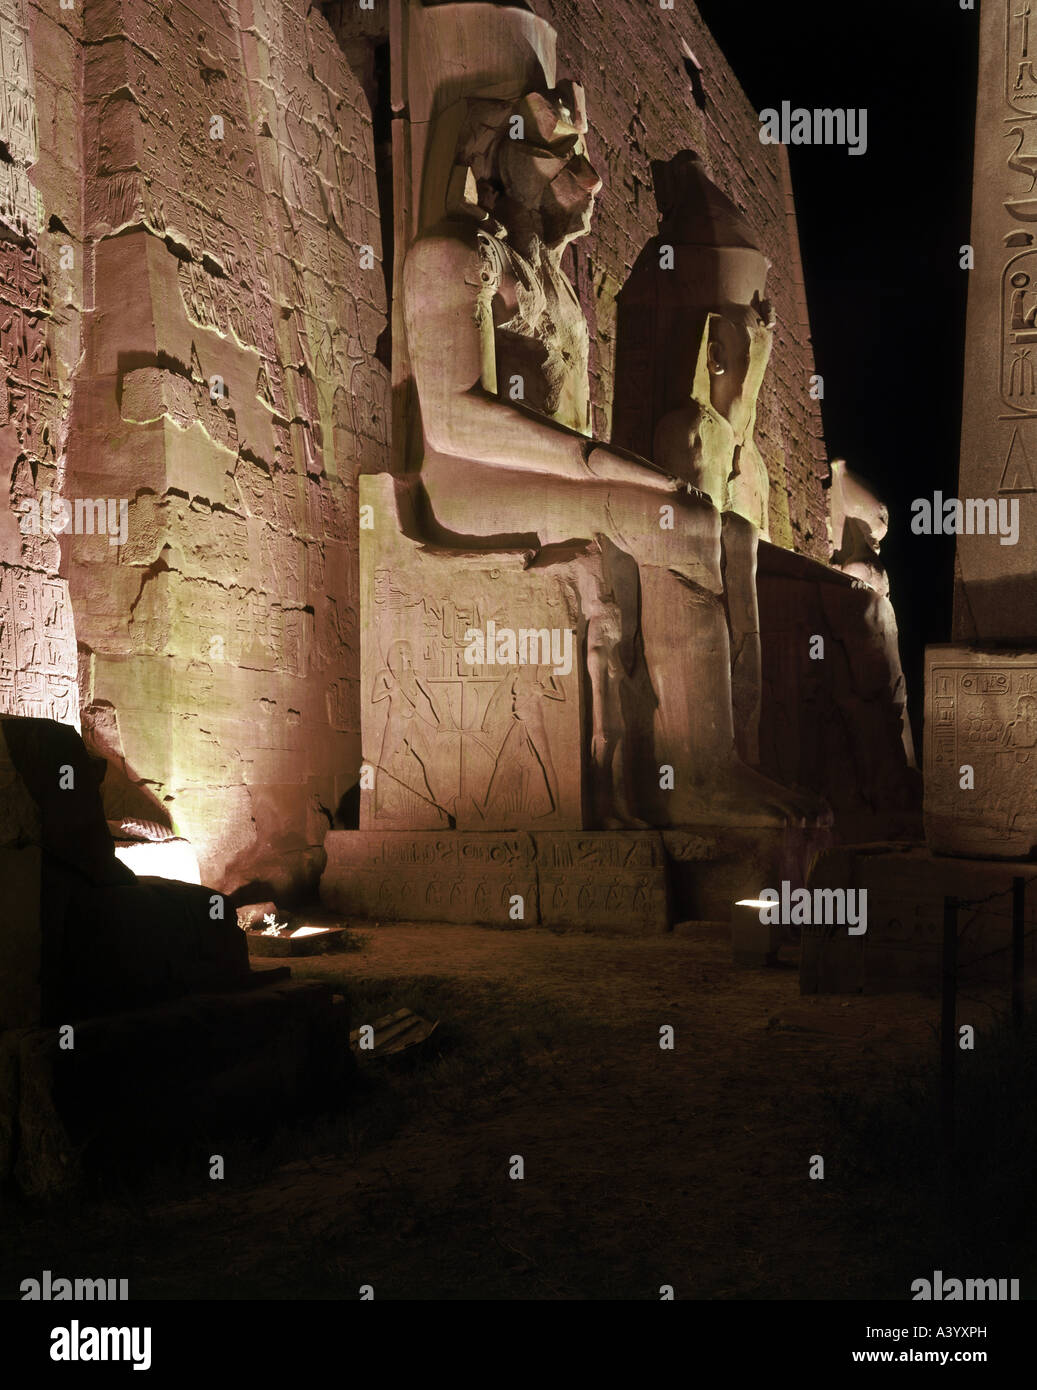 Reise/Geographie, Ägypten, Luxor, Gebäude, Tempel, gottgleiche Familie aus Theban Amun, Mut, Chons, Außenansicht, Nacht, sitzende Statuen von pharao Ramesses II, Architekt Amenhotep, Sohn von Hapu', 1402 - 1364 v. Chr., Erweiterungen unter Ramesses II, 1303 - 1236 v. Chr., Stockfoto